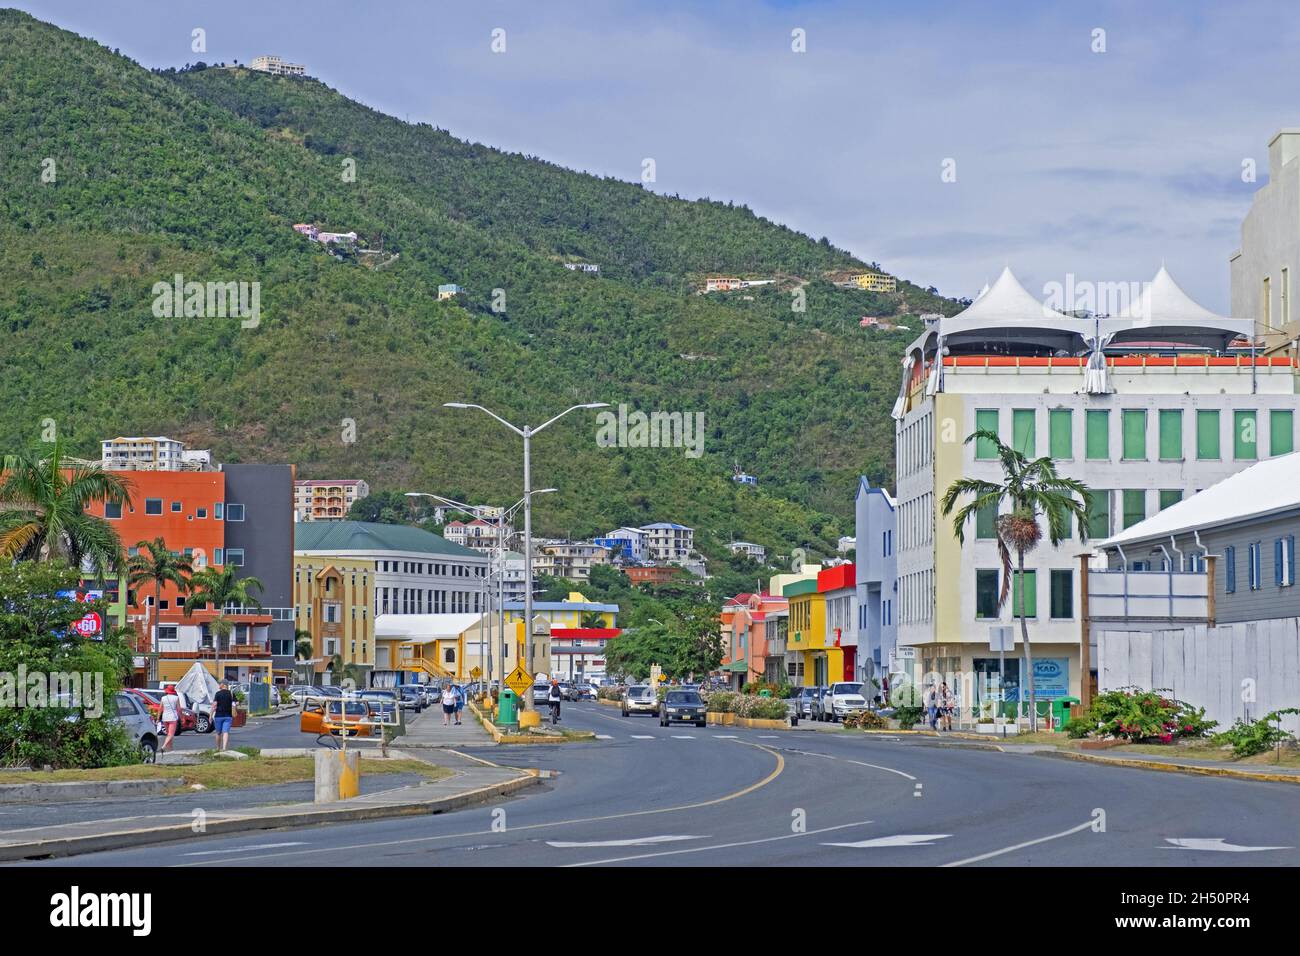 Road Town, Hauptstadt der Insel Tortola, größte und bevölkerungsreichste der Britischen Jungferninseln, kleine Antillen in der Karibik Stockfoto